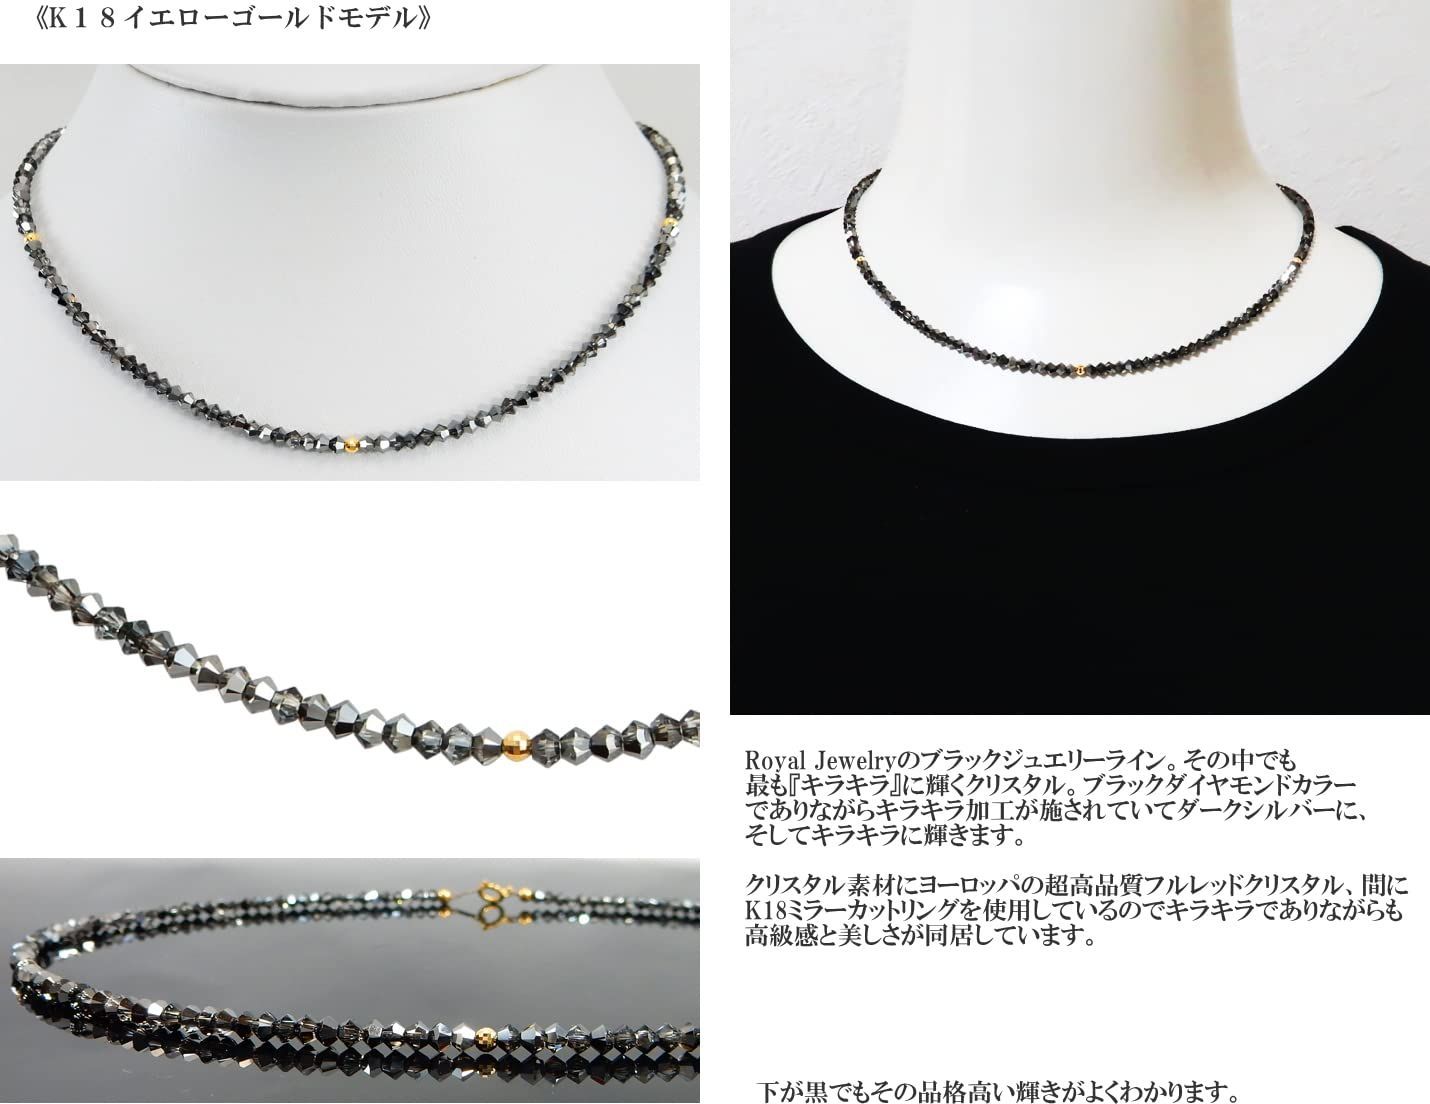 【特価商品】クリスタル ブラックダイヤモンドカラー キラキラ ミラーカットリング 18金 ネックレス K18 18k 3mm ロイヤルジュエリー Jewelry] [Royal